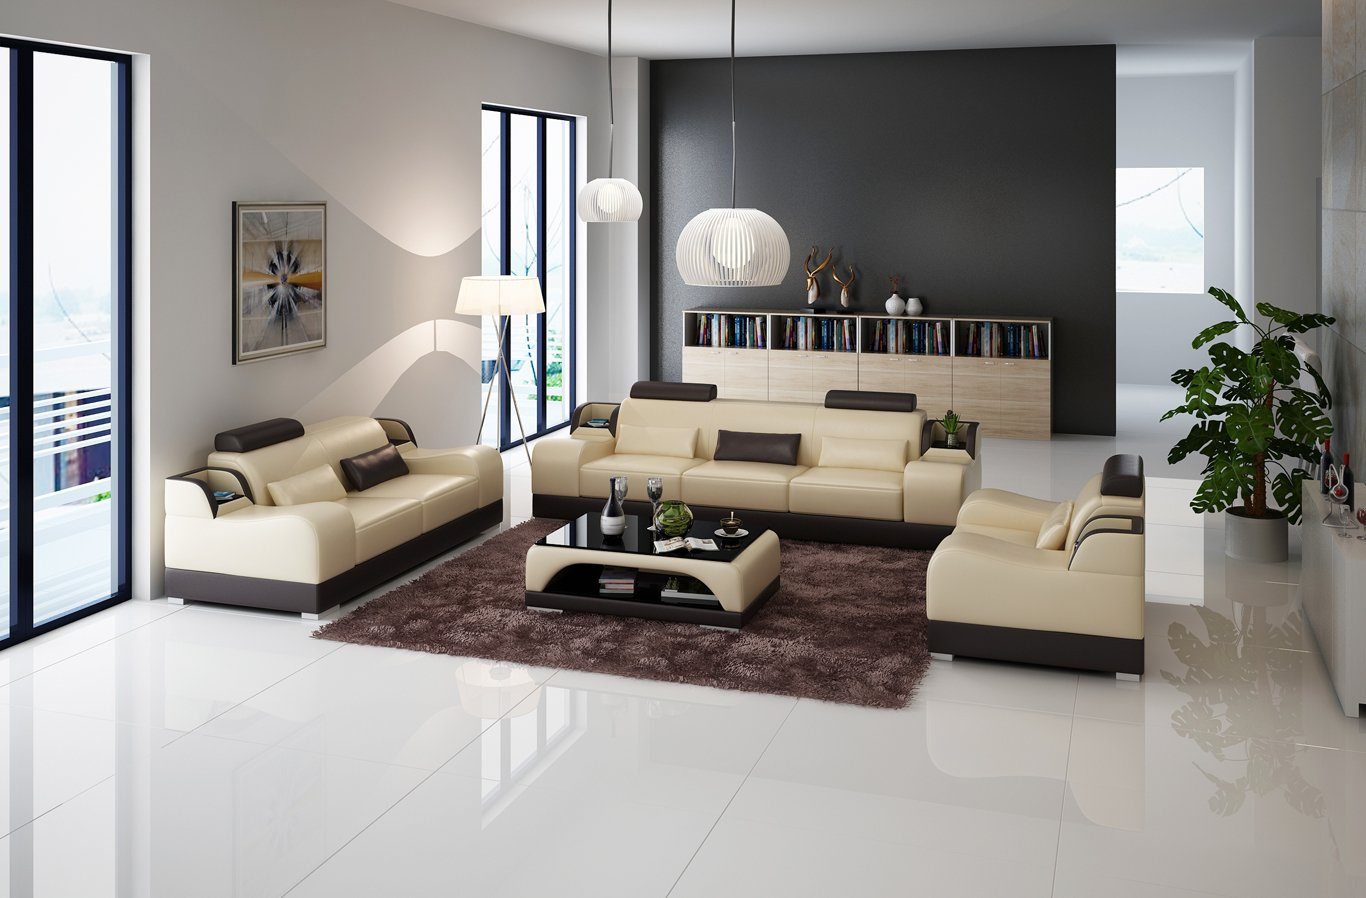 Beige/Braun JVmoebel Neu, Europe Sofa Luxus Polster Couchen 3+2+2 Made in Sofa Design Couch Set Modern Sitzer